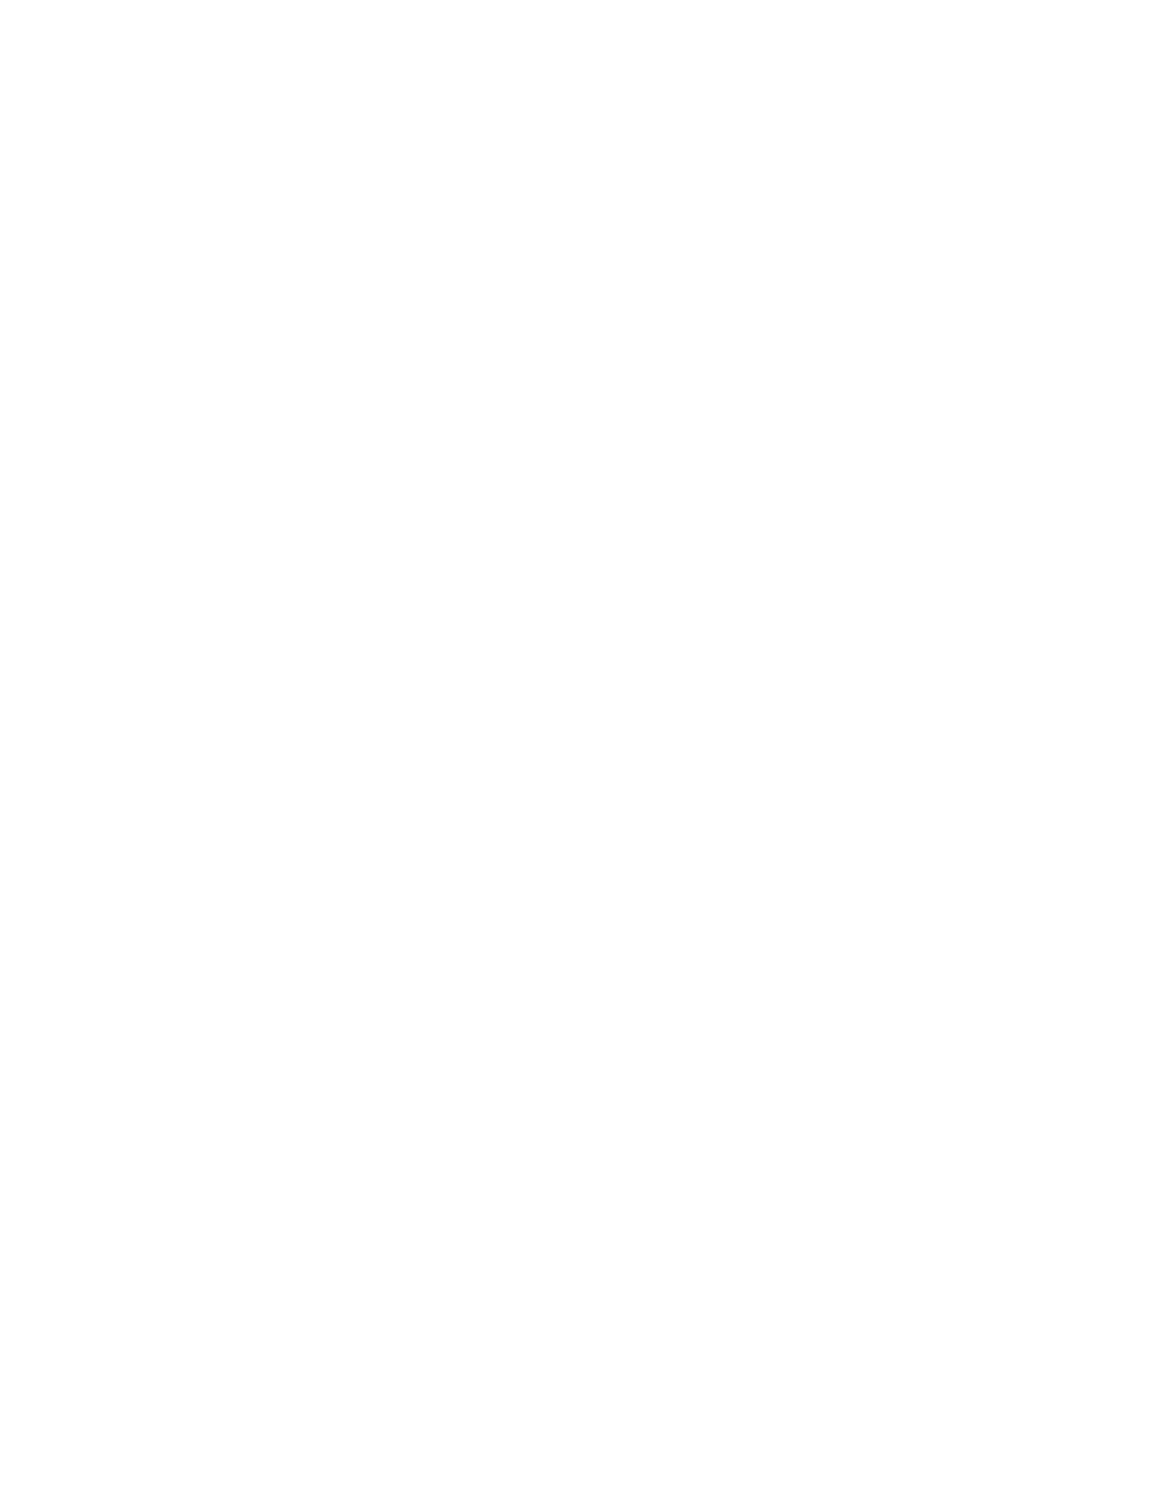 Scherer Violin Shop